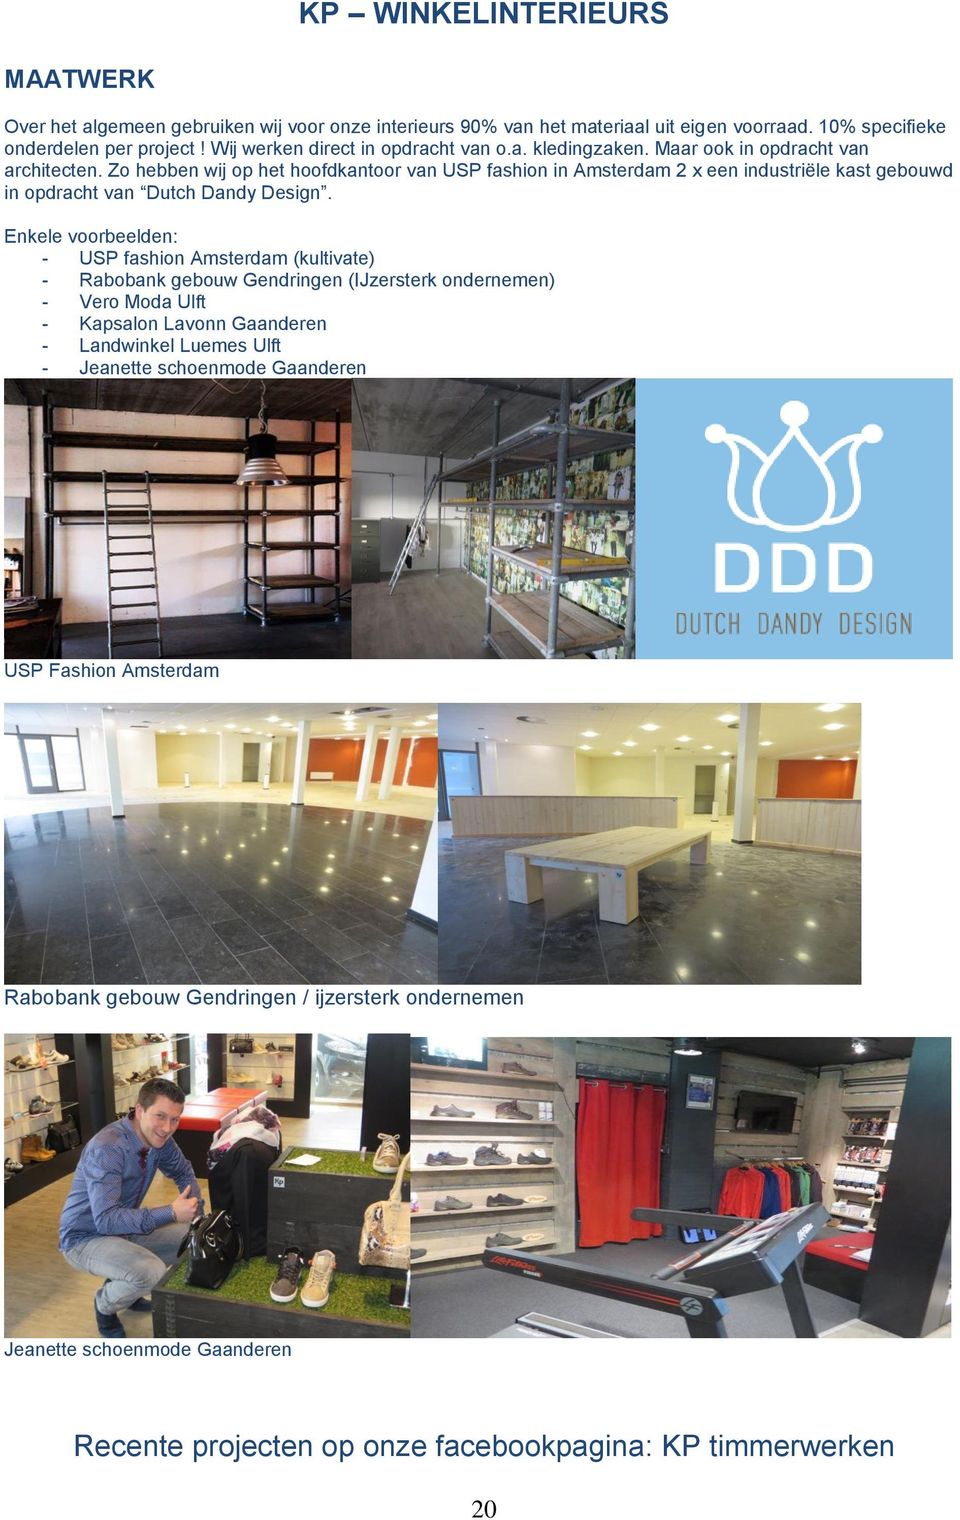 Zo hebben wij op het hoofdkantoor van USP fashion in Amsterdam 2 x een industriële kast gebouwd in opdracht van Dutch Dandy Design.